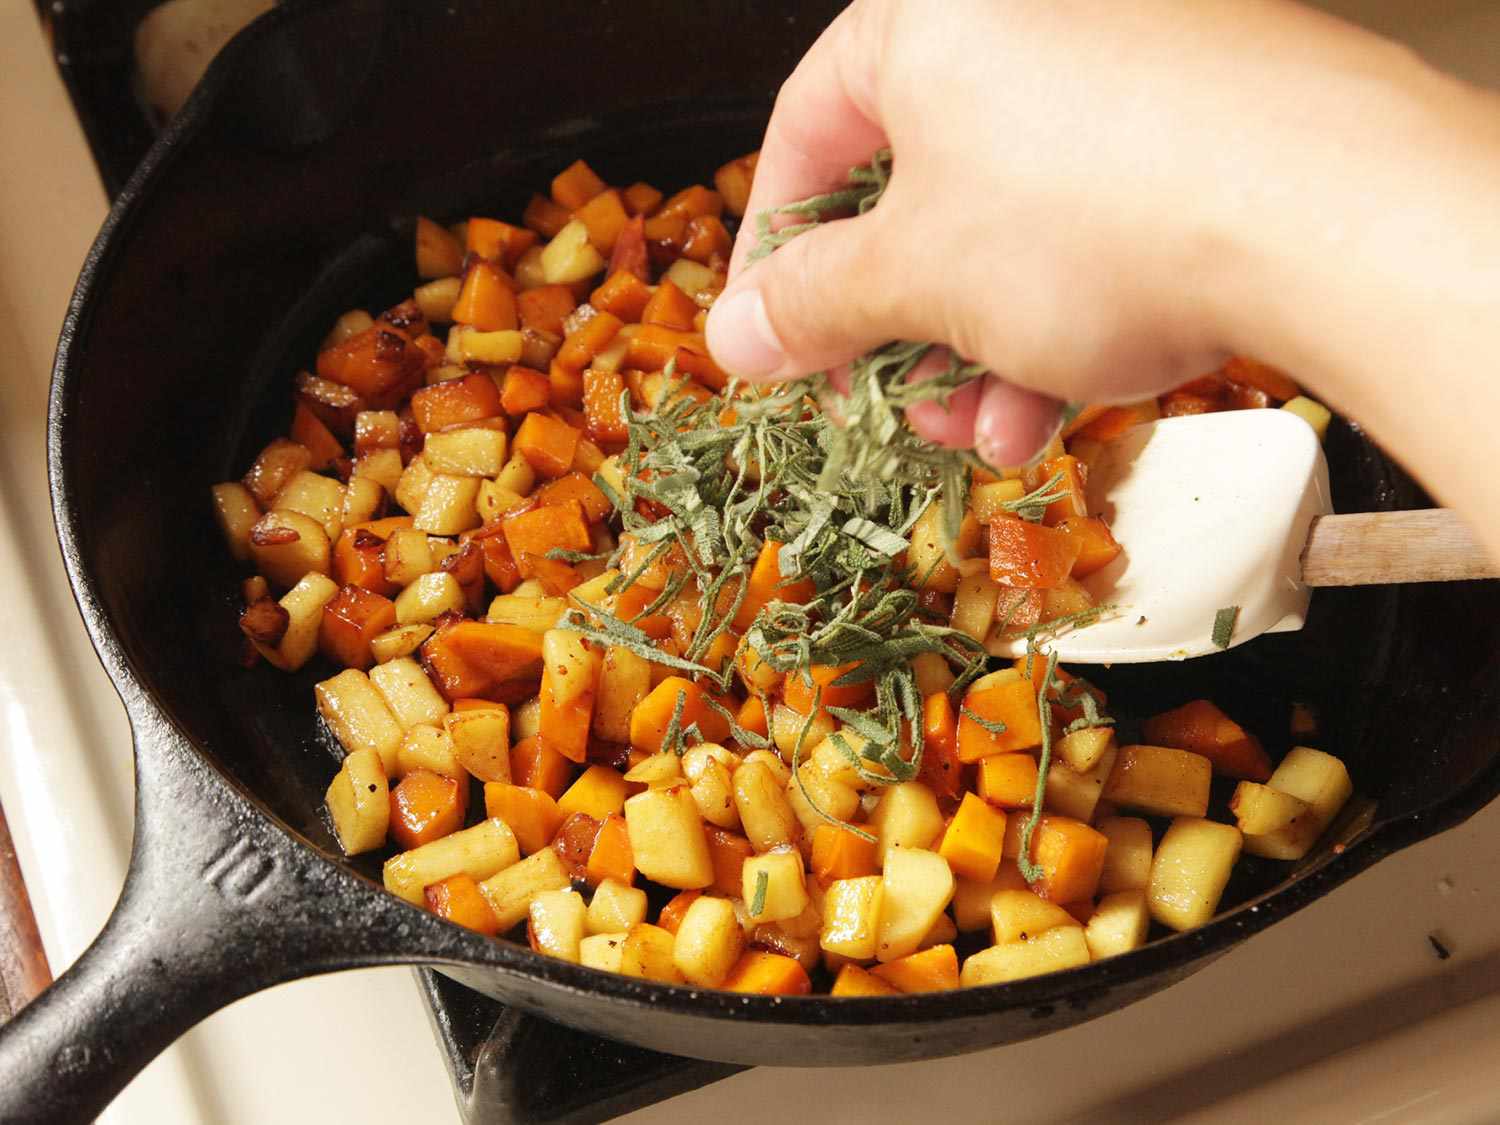 将切碎的鼠尾草撒在盛有炒好的南瓜块和苹果块的平底锅上。